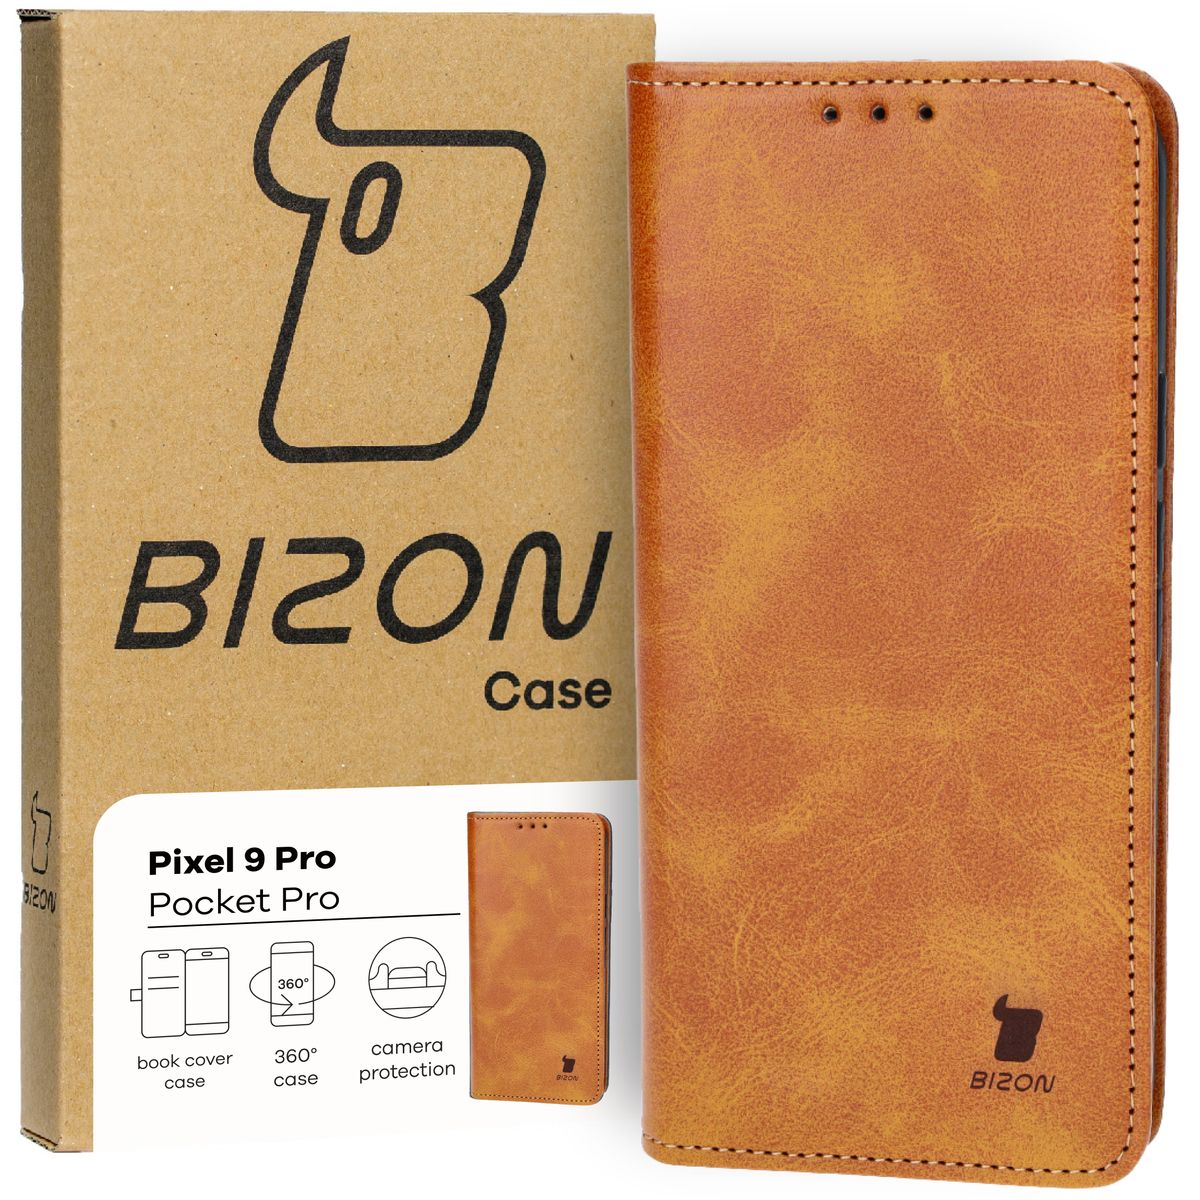 Schutzhülle für Google Pixel 9 Pro, Bizon Case Pocket Pro, Braun